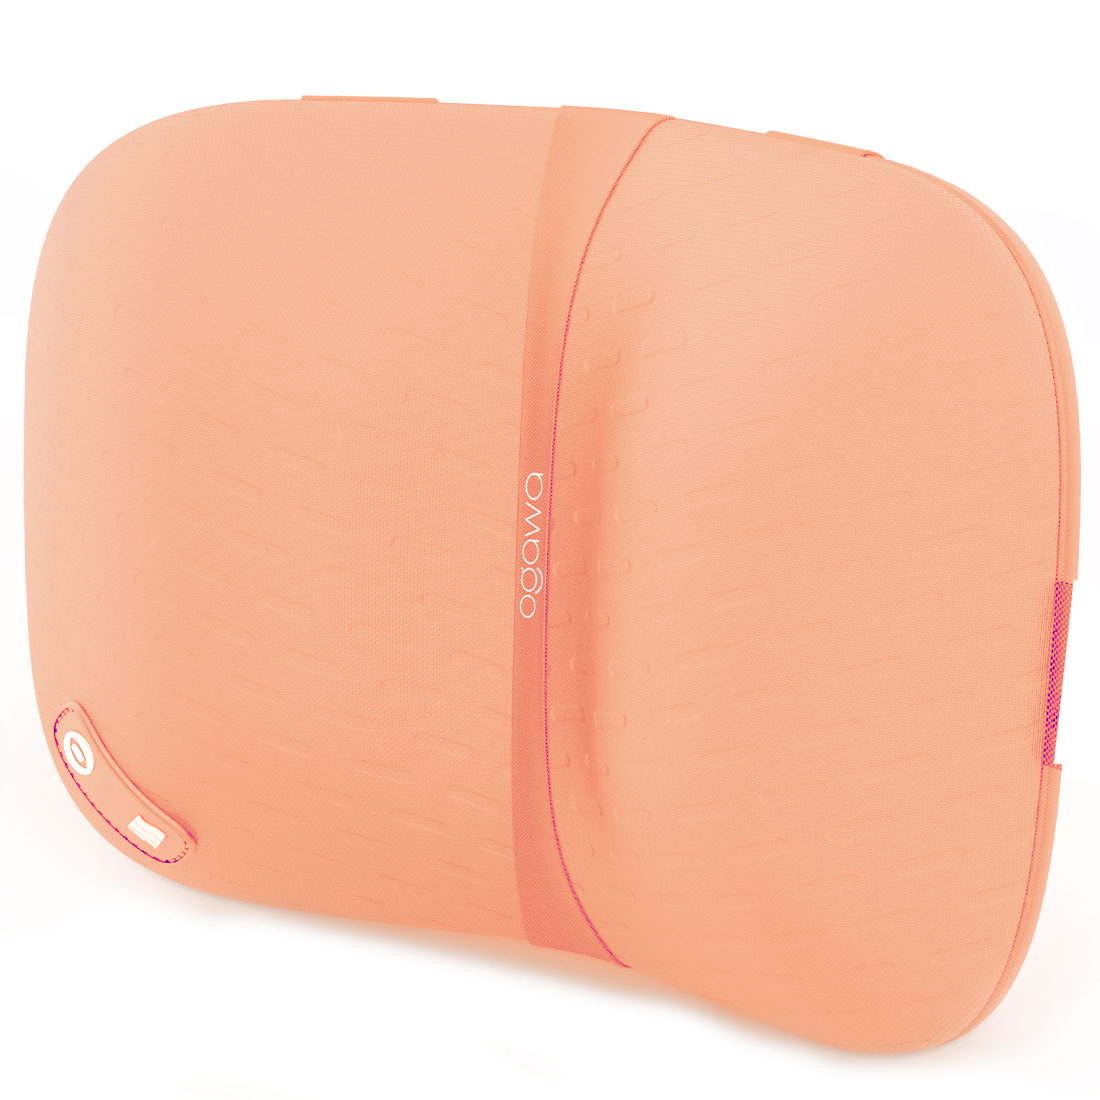 OGAWA Vizo V-SHAPE 120° Wireless Shiatsu Massager (Lush Pink)